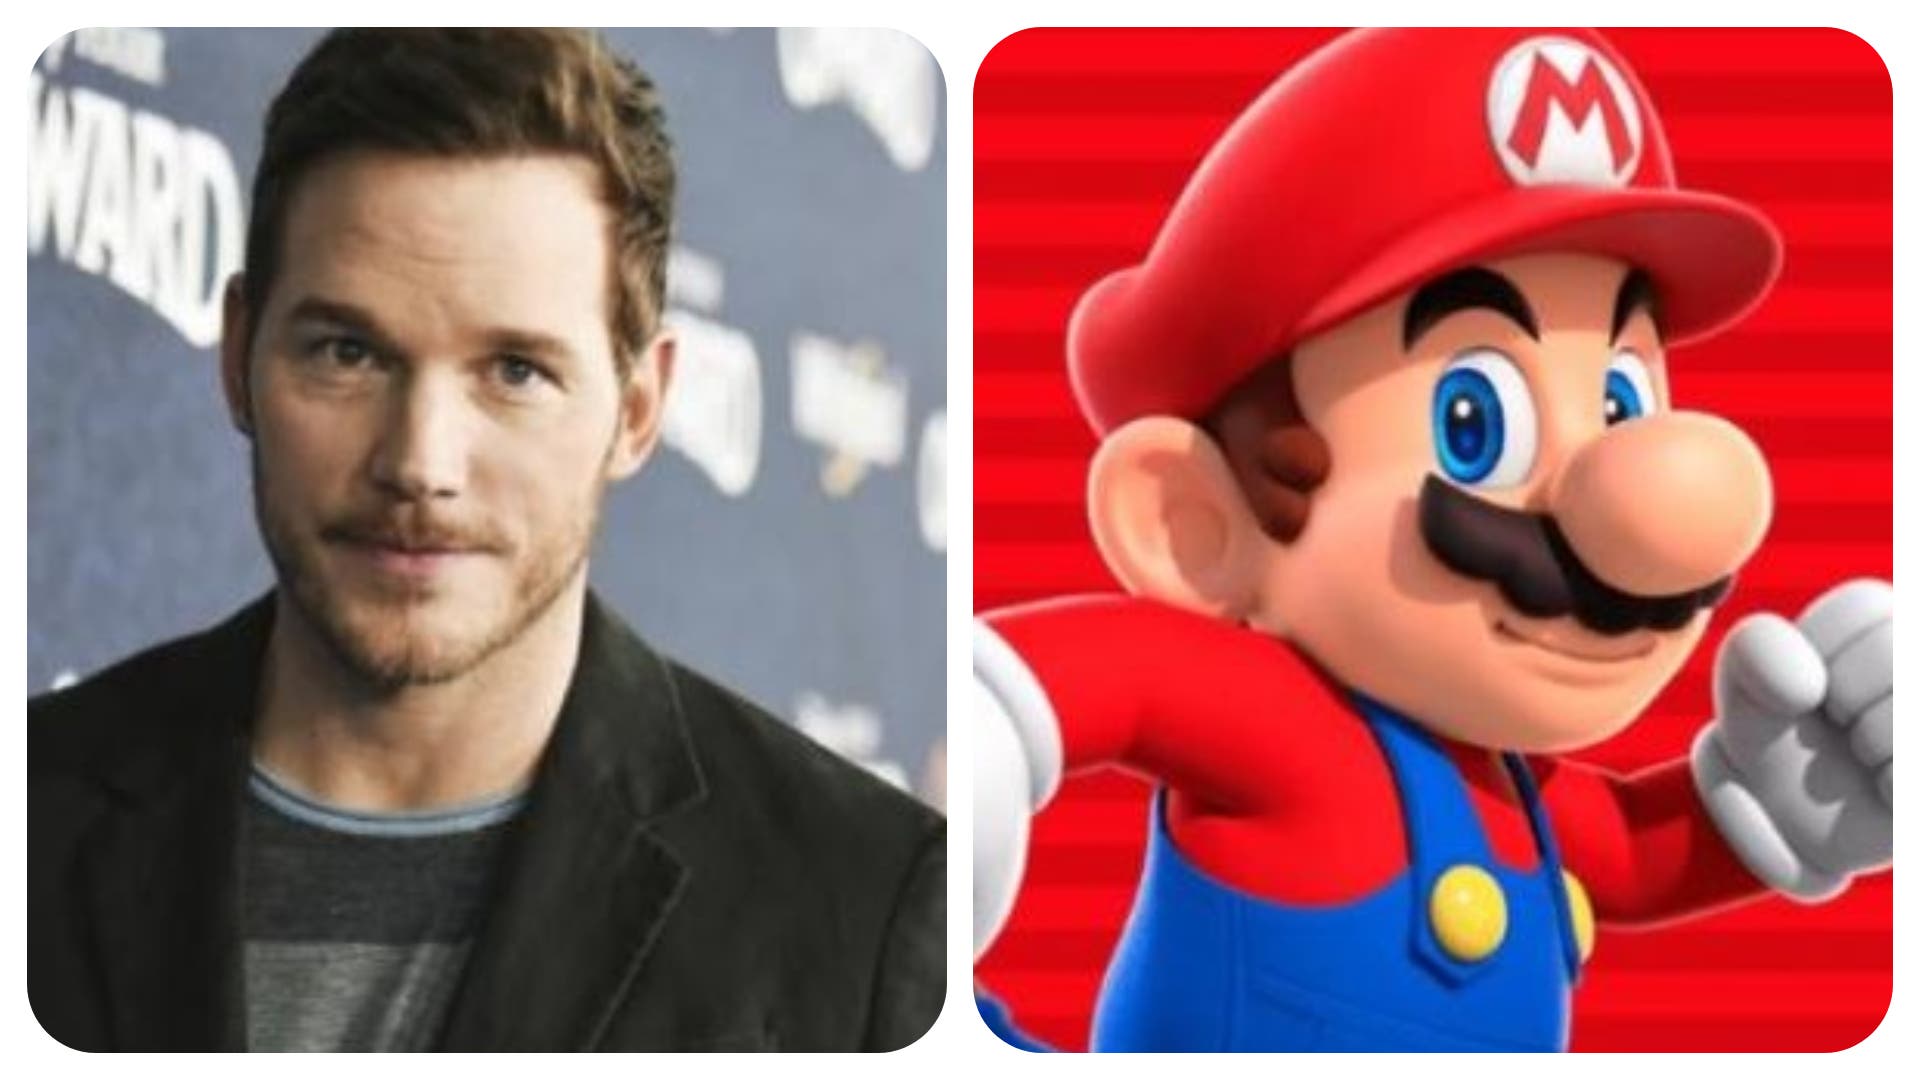 Chris Pratt se pronuncia sobre su papel como Super Mario en la nueva película